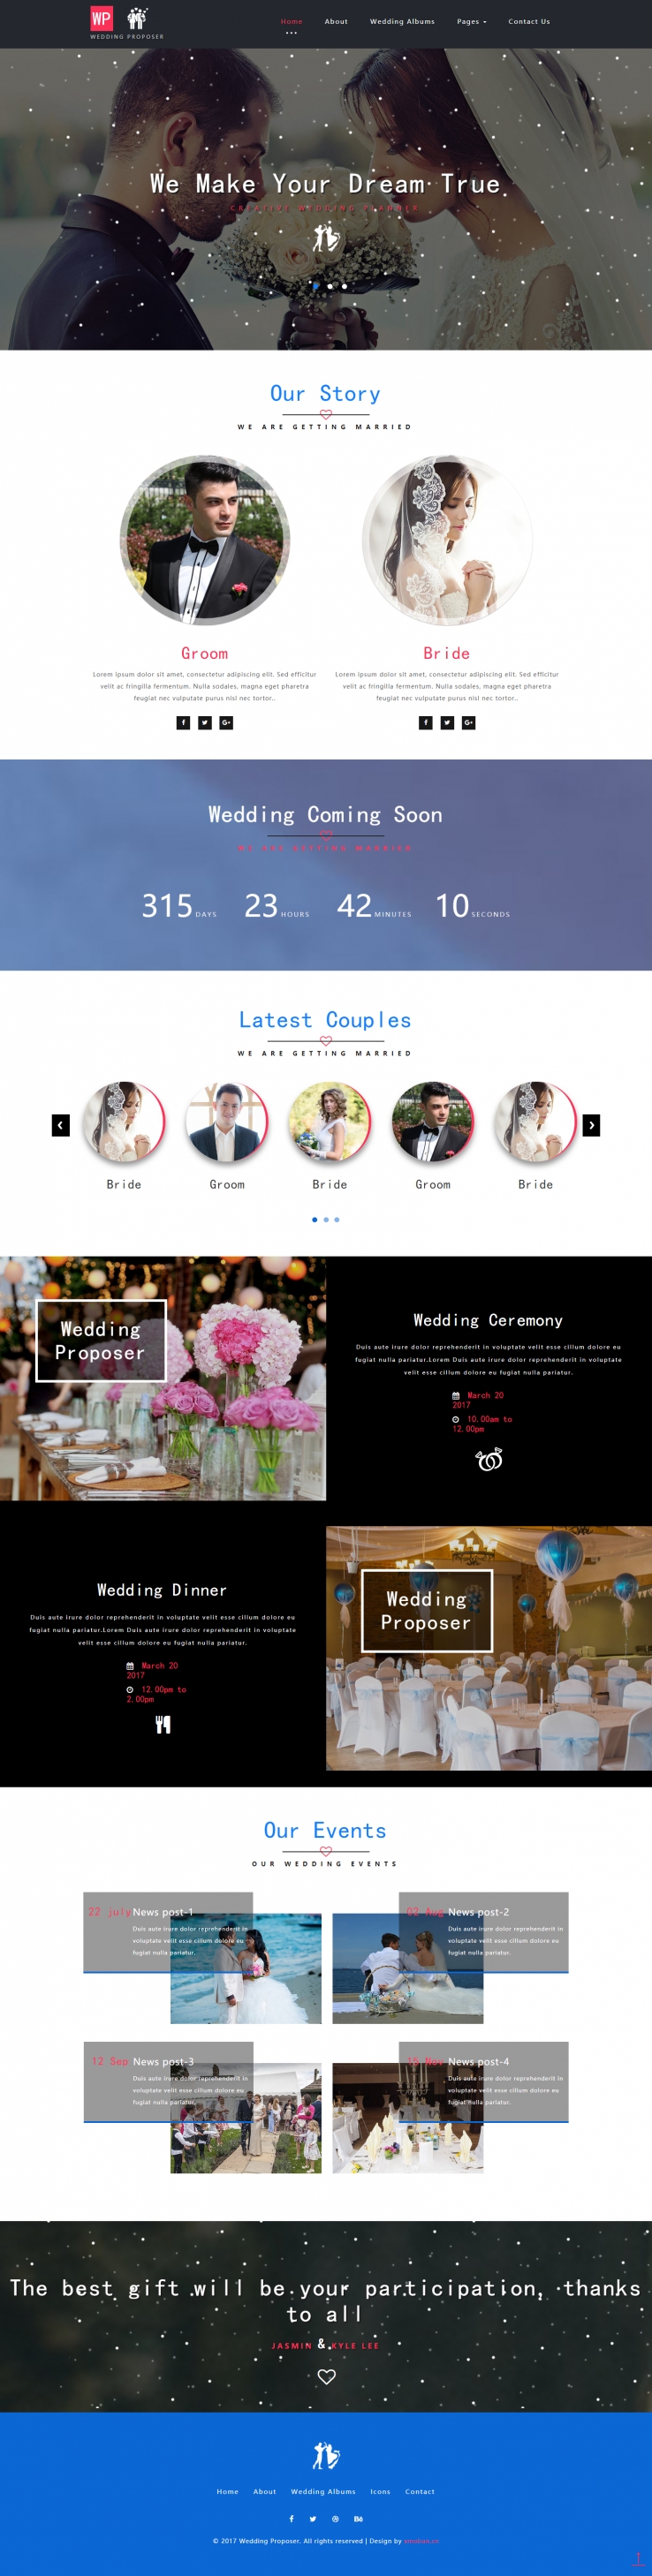 红色简洁风格的婚庆公司企业网站源码下载